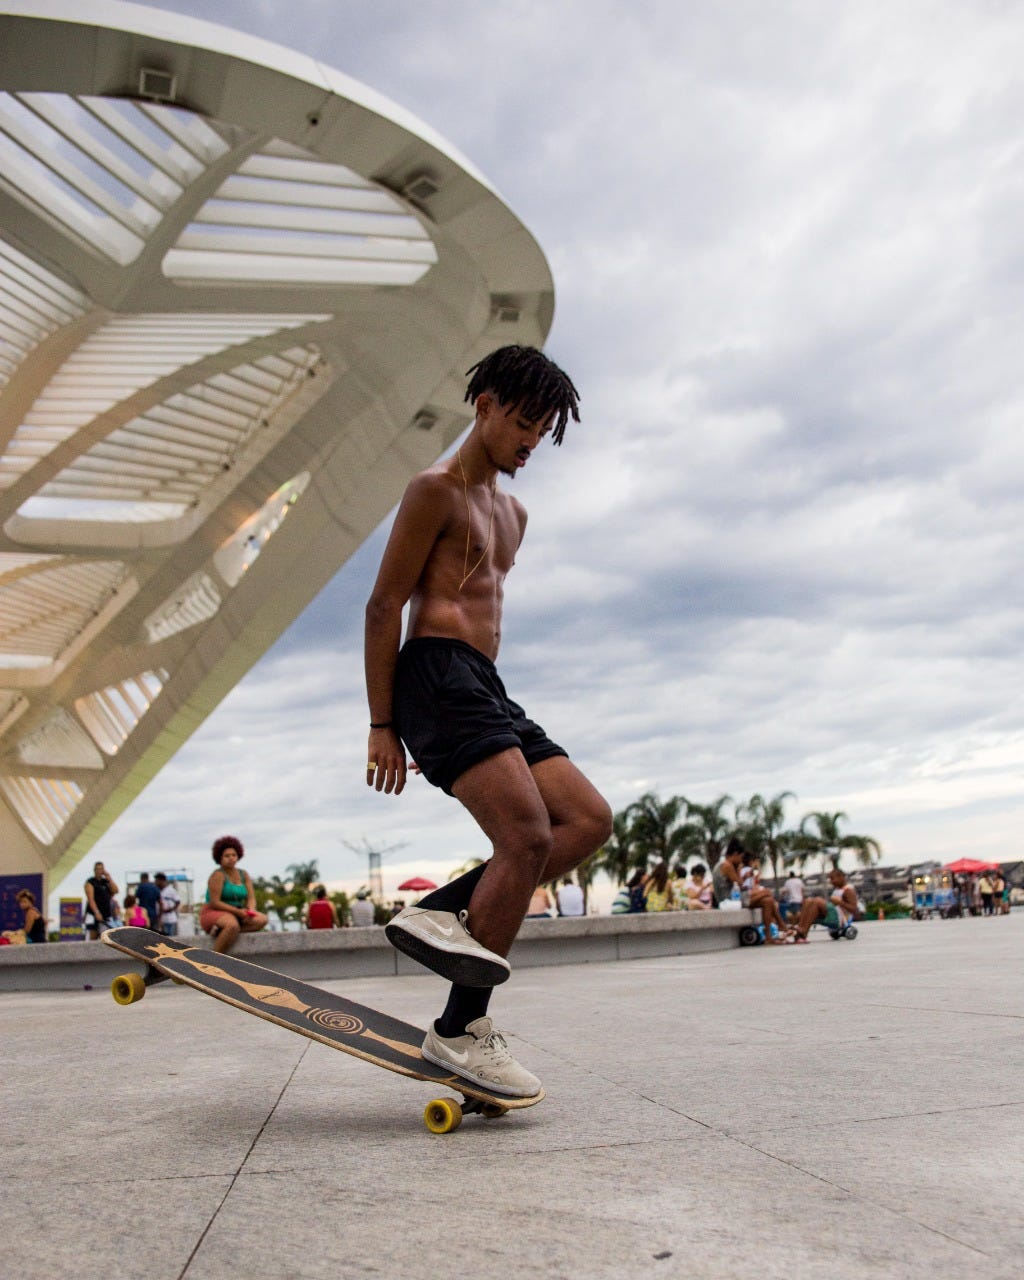 Depois de um acidente Salazar descobriu que com o skate poderia se tornar  infinito | by Rostos do Rio | Medium